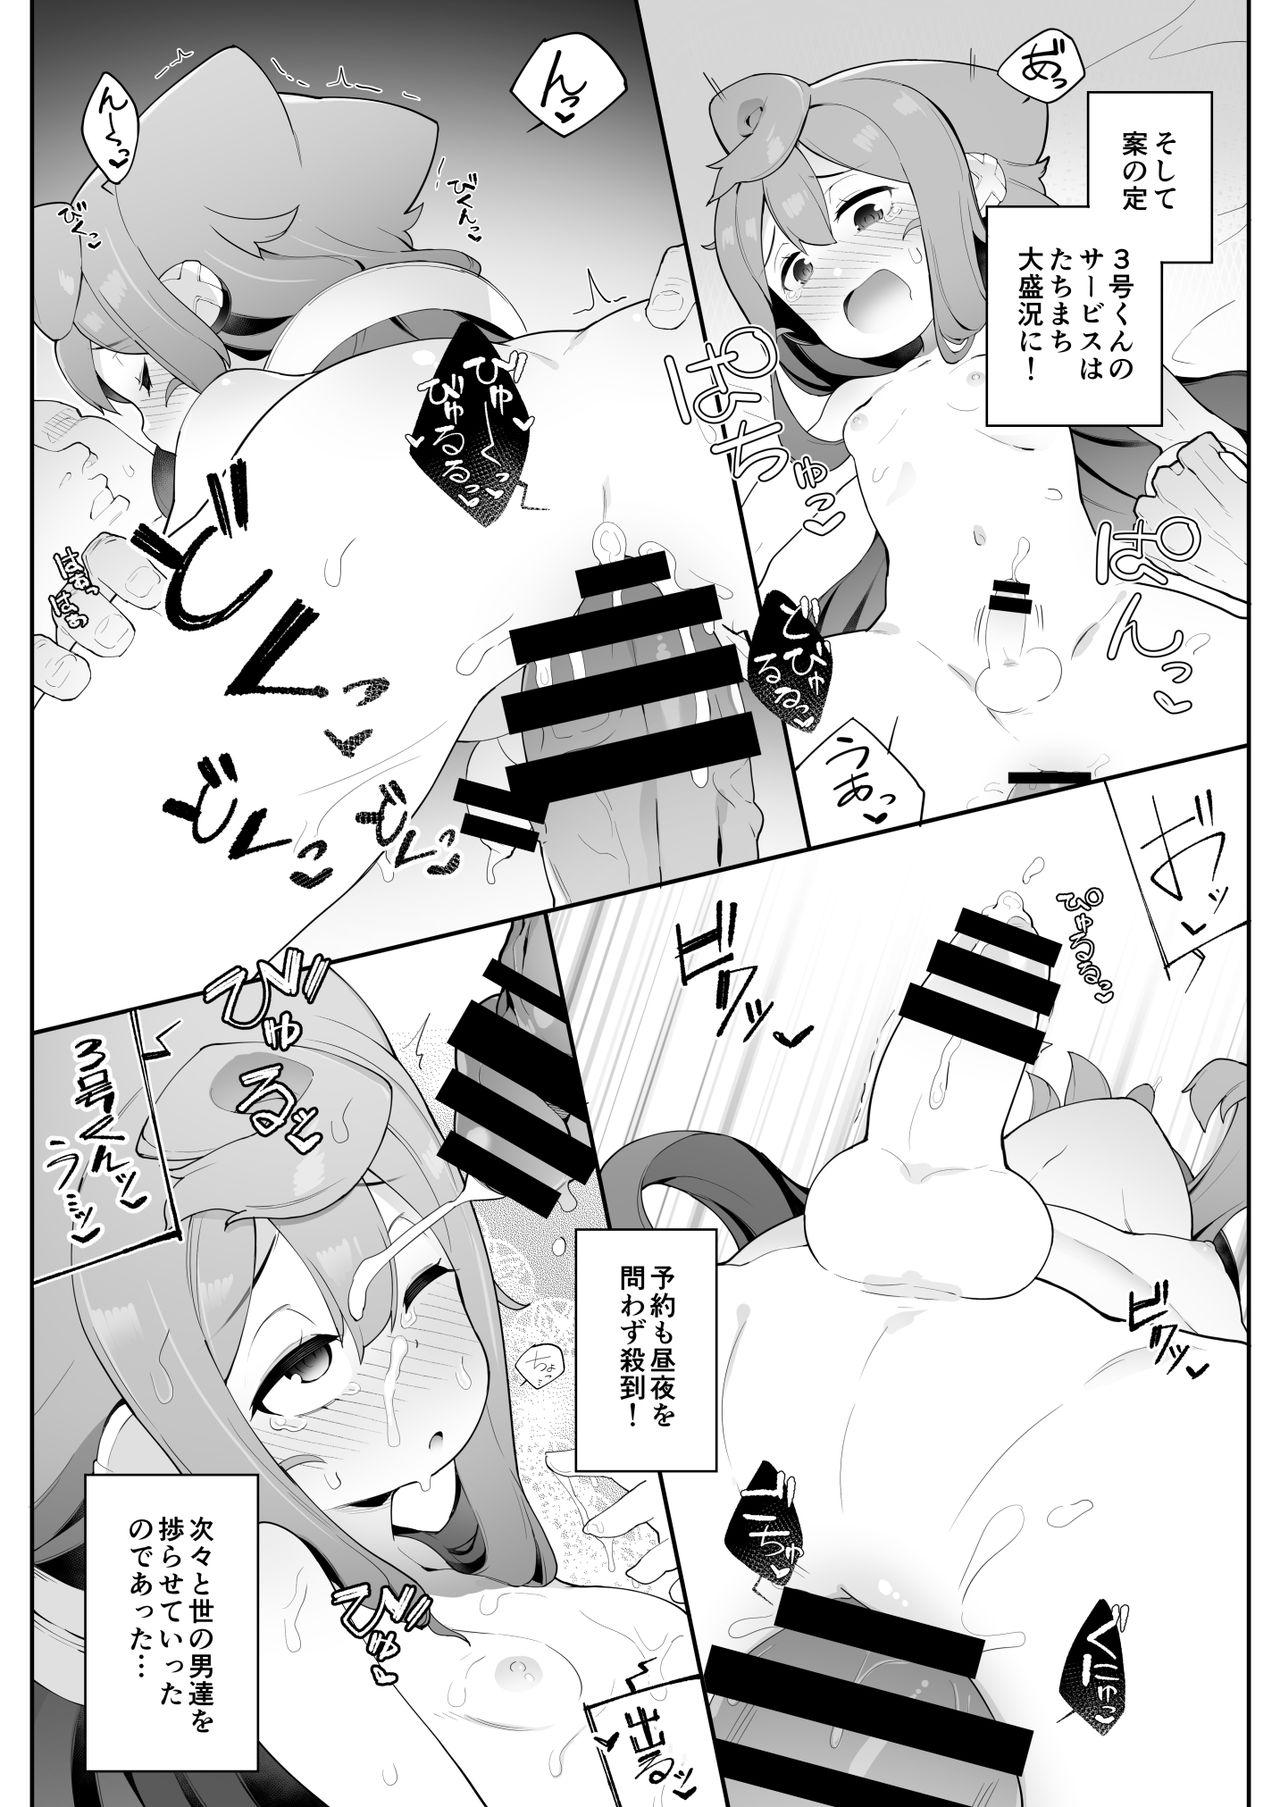 Snatch (Akihabara Chou Doujinsai) [Kuropoplar (Nyakkuru)] HakaDol! 3-gou-kun no Mesuochi Tokunou DeliHeal Service (Hacka Doll) [Digital] - Hacka doll Hardon - Page 6